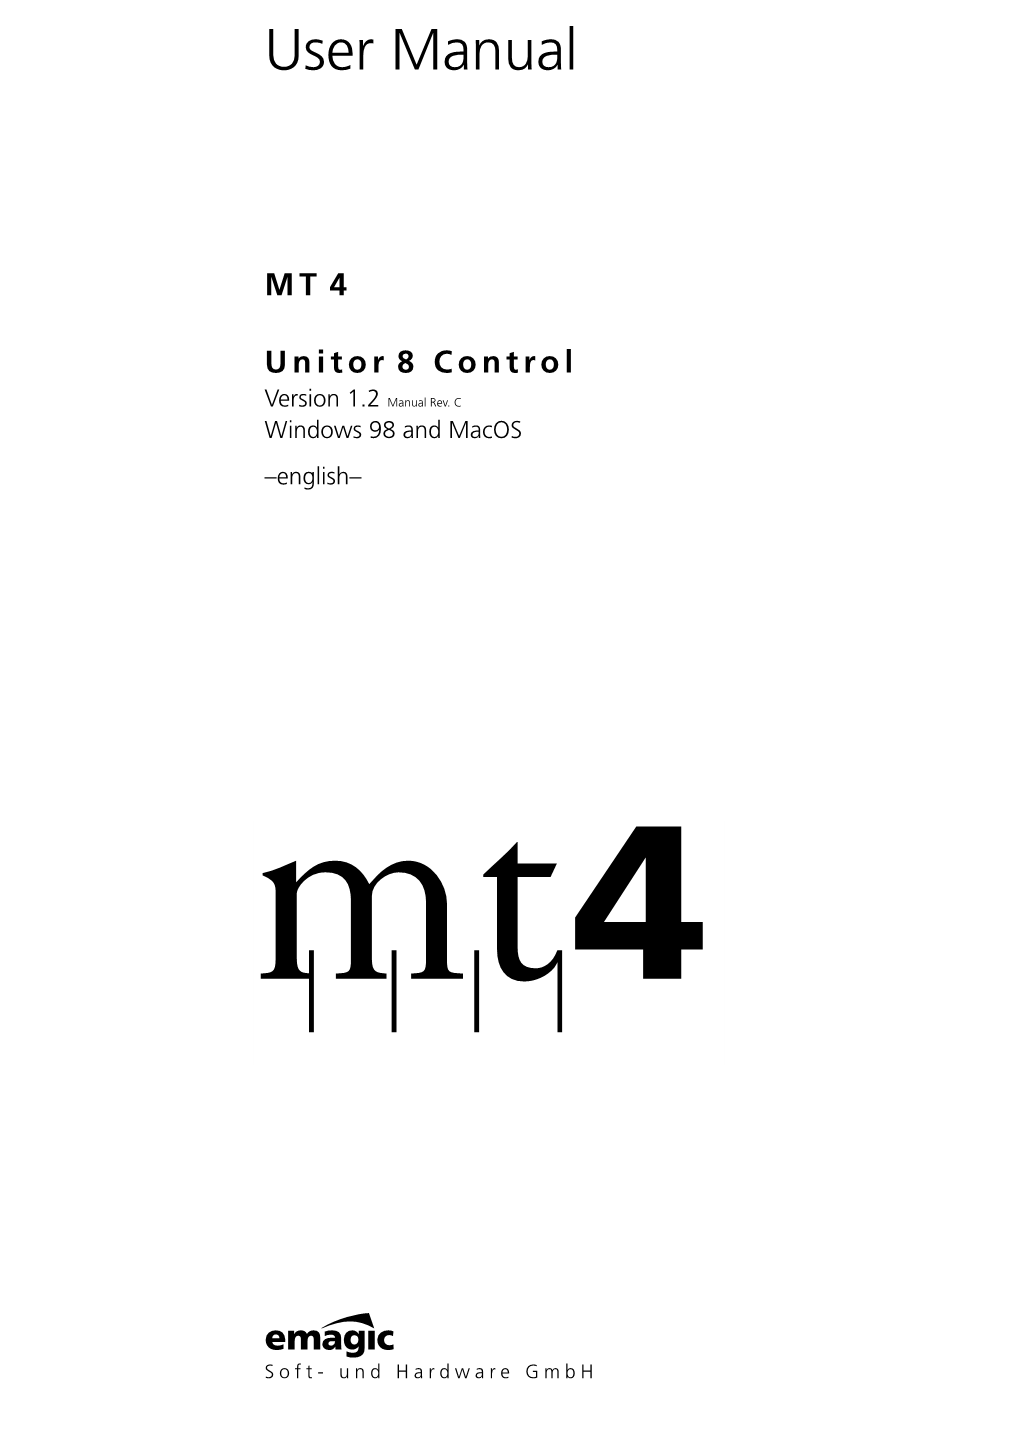 MT4 User Manual